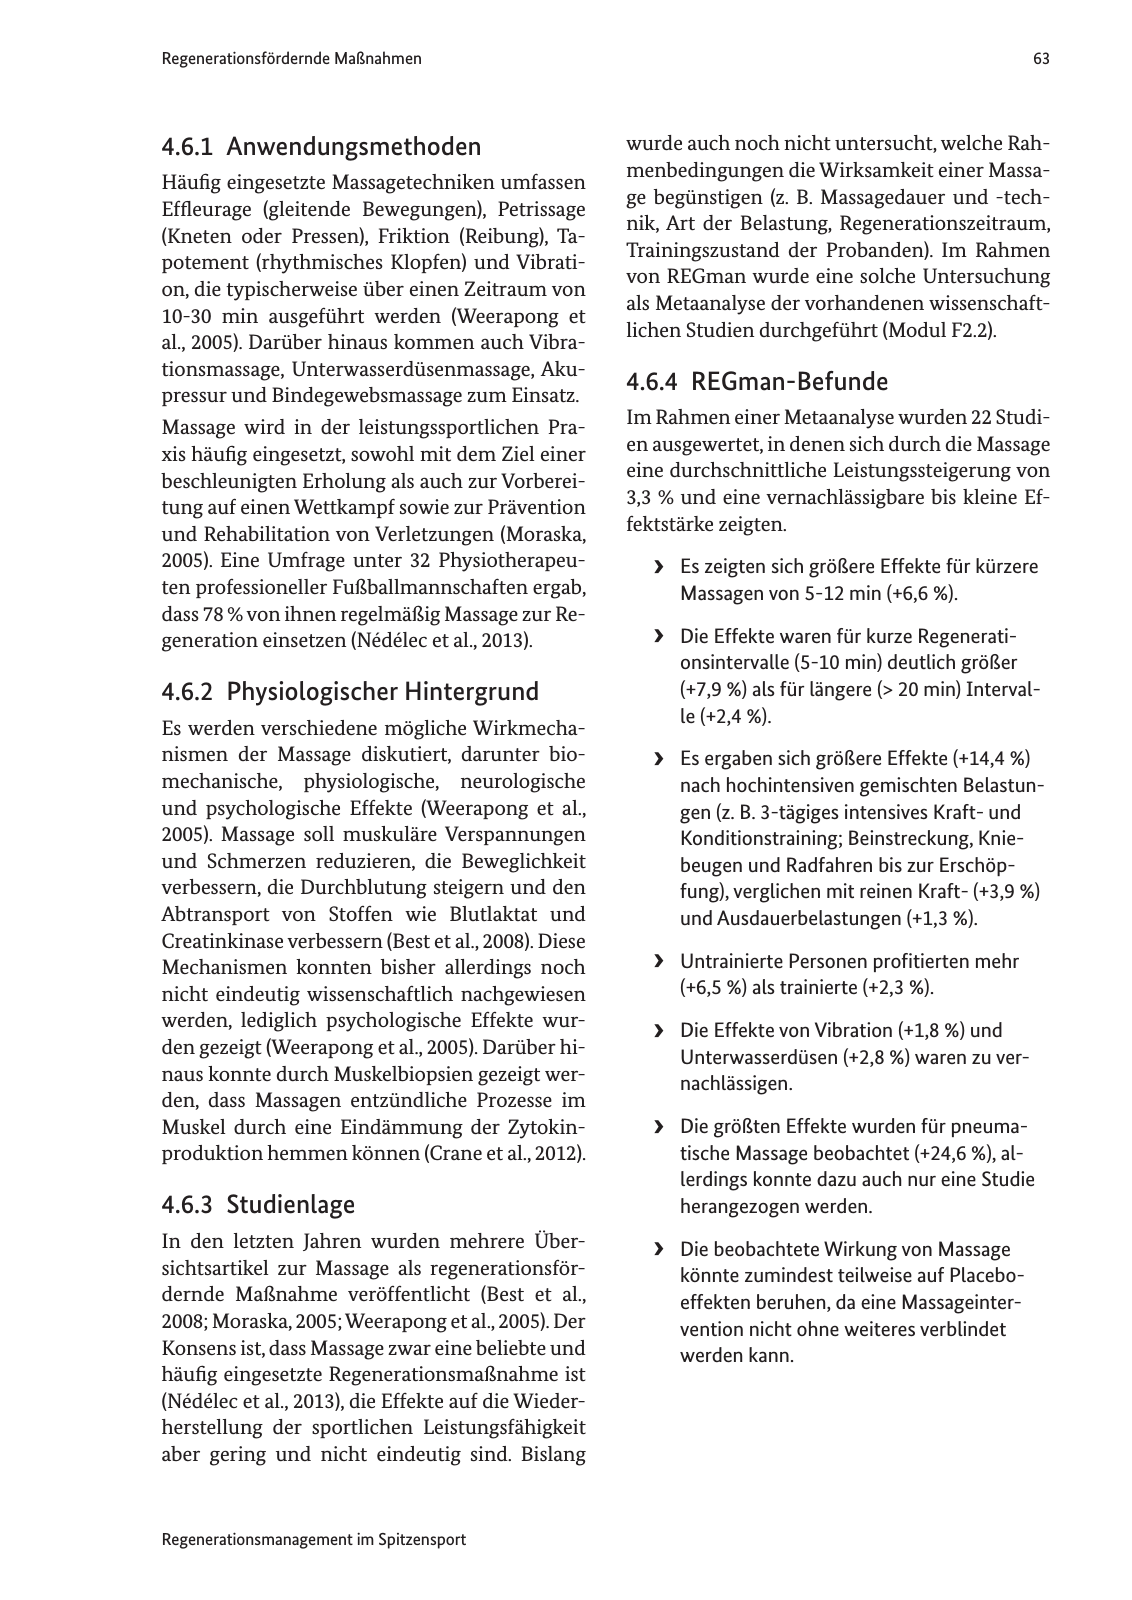 Vorschau Handreichung Regmann / Regenerationsmanagement im Spitzensport Seite 64